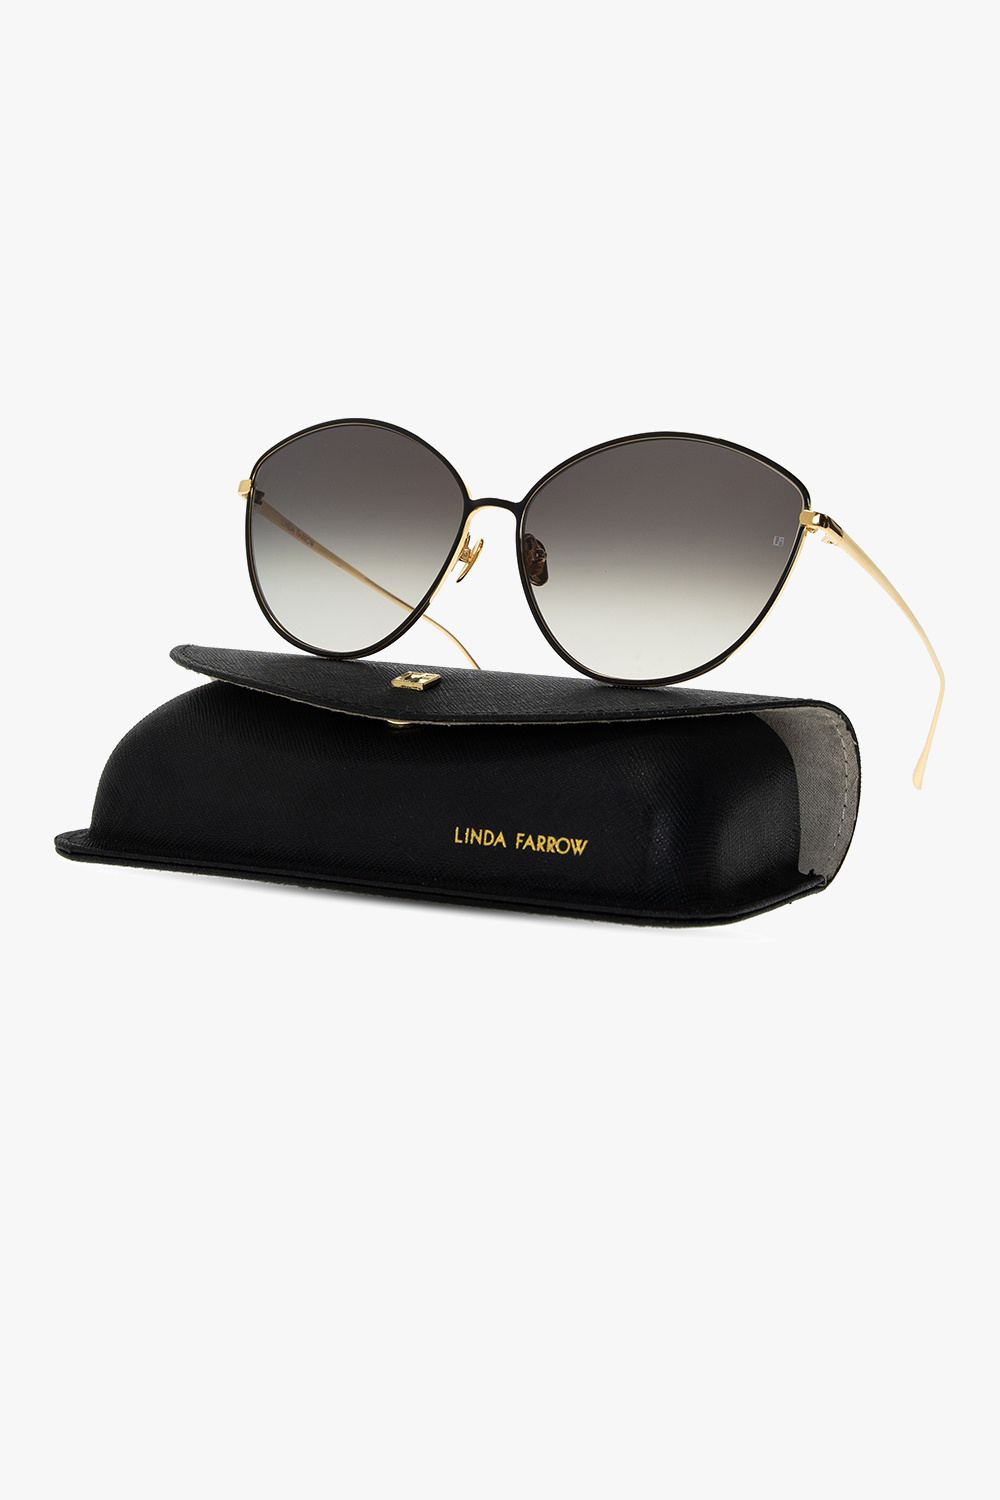 Vtg Gianni Versace Sunglasses Model 4600?